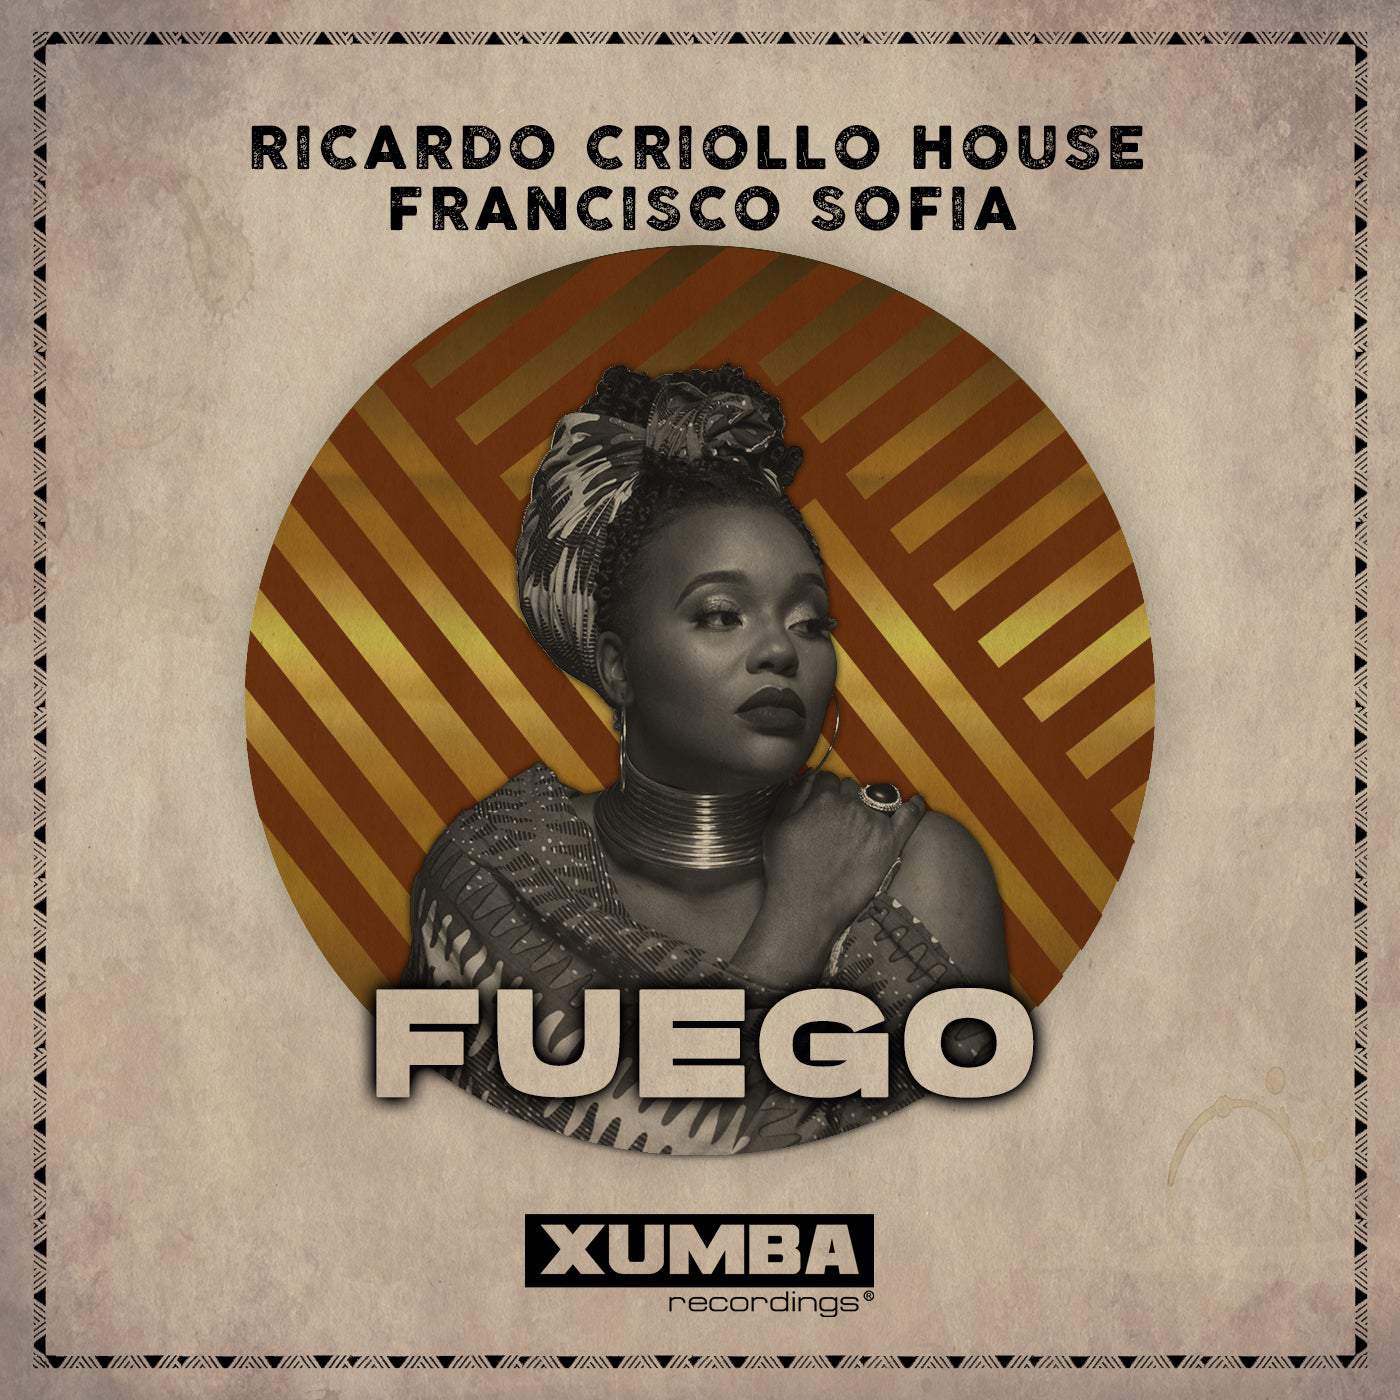 image cover: Ricardo Criollo House, Francisco Sofia - Fuego / Xumba Recordings